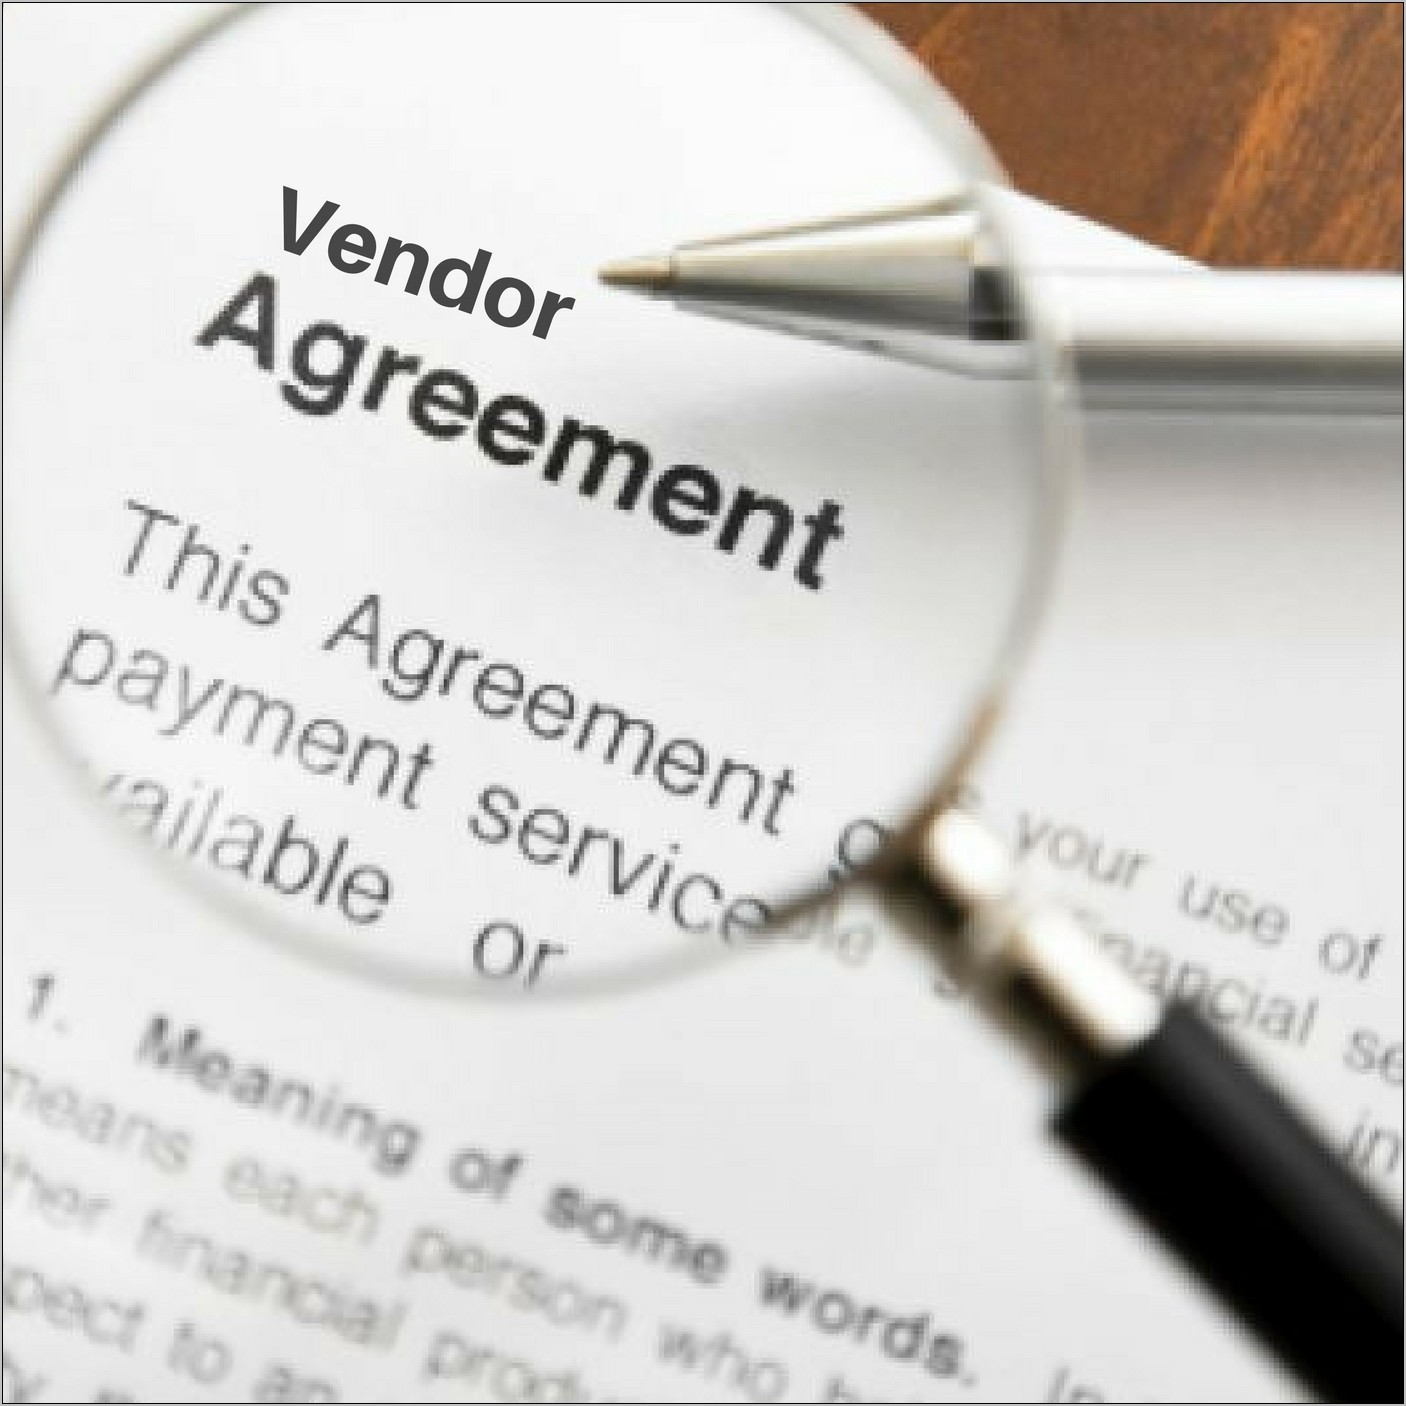 Vendor Agreement Format India